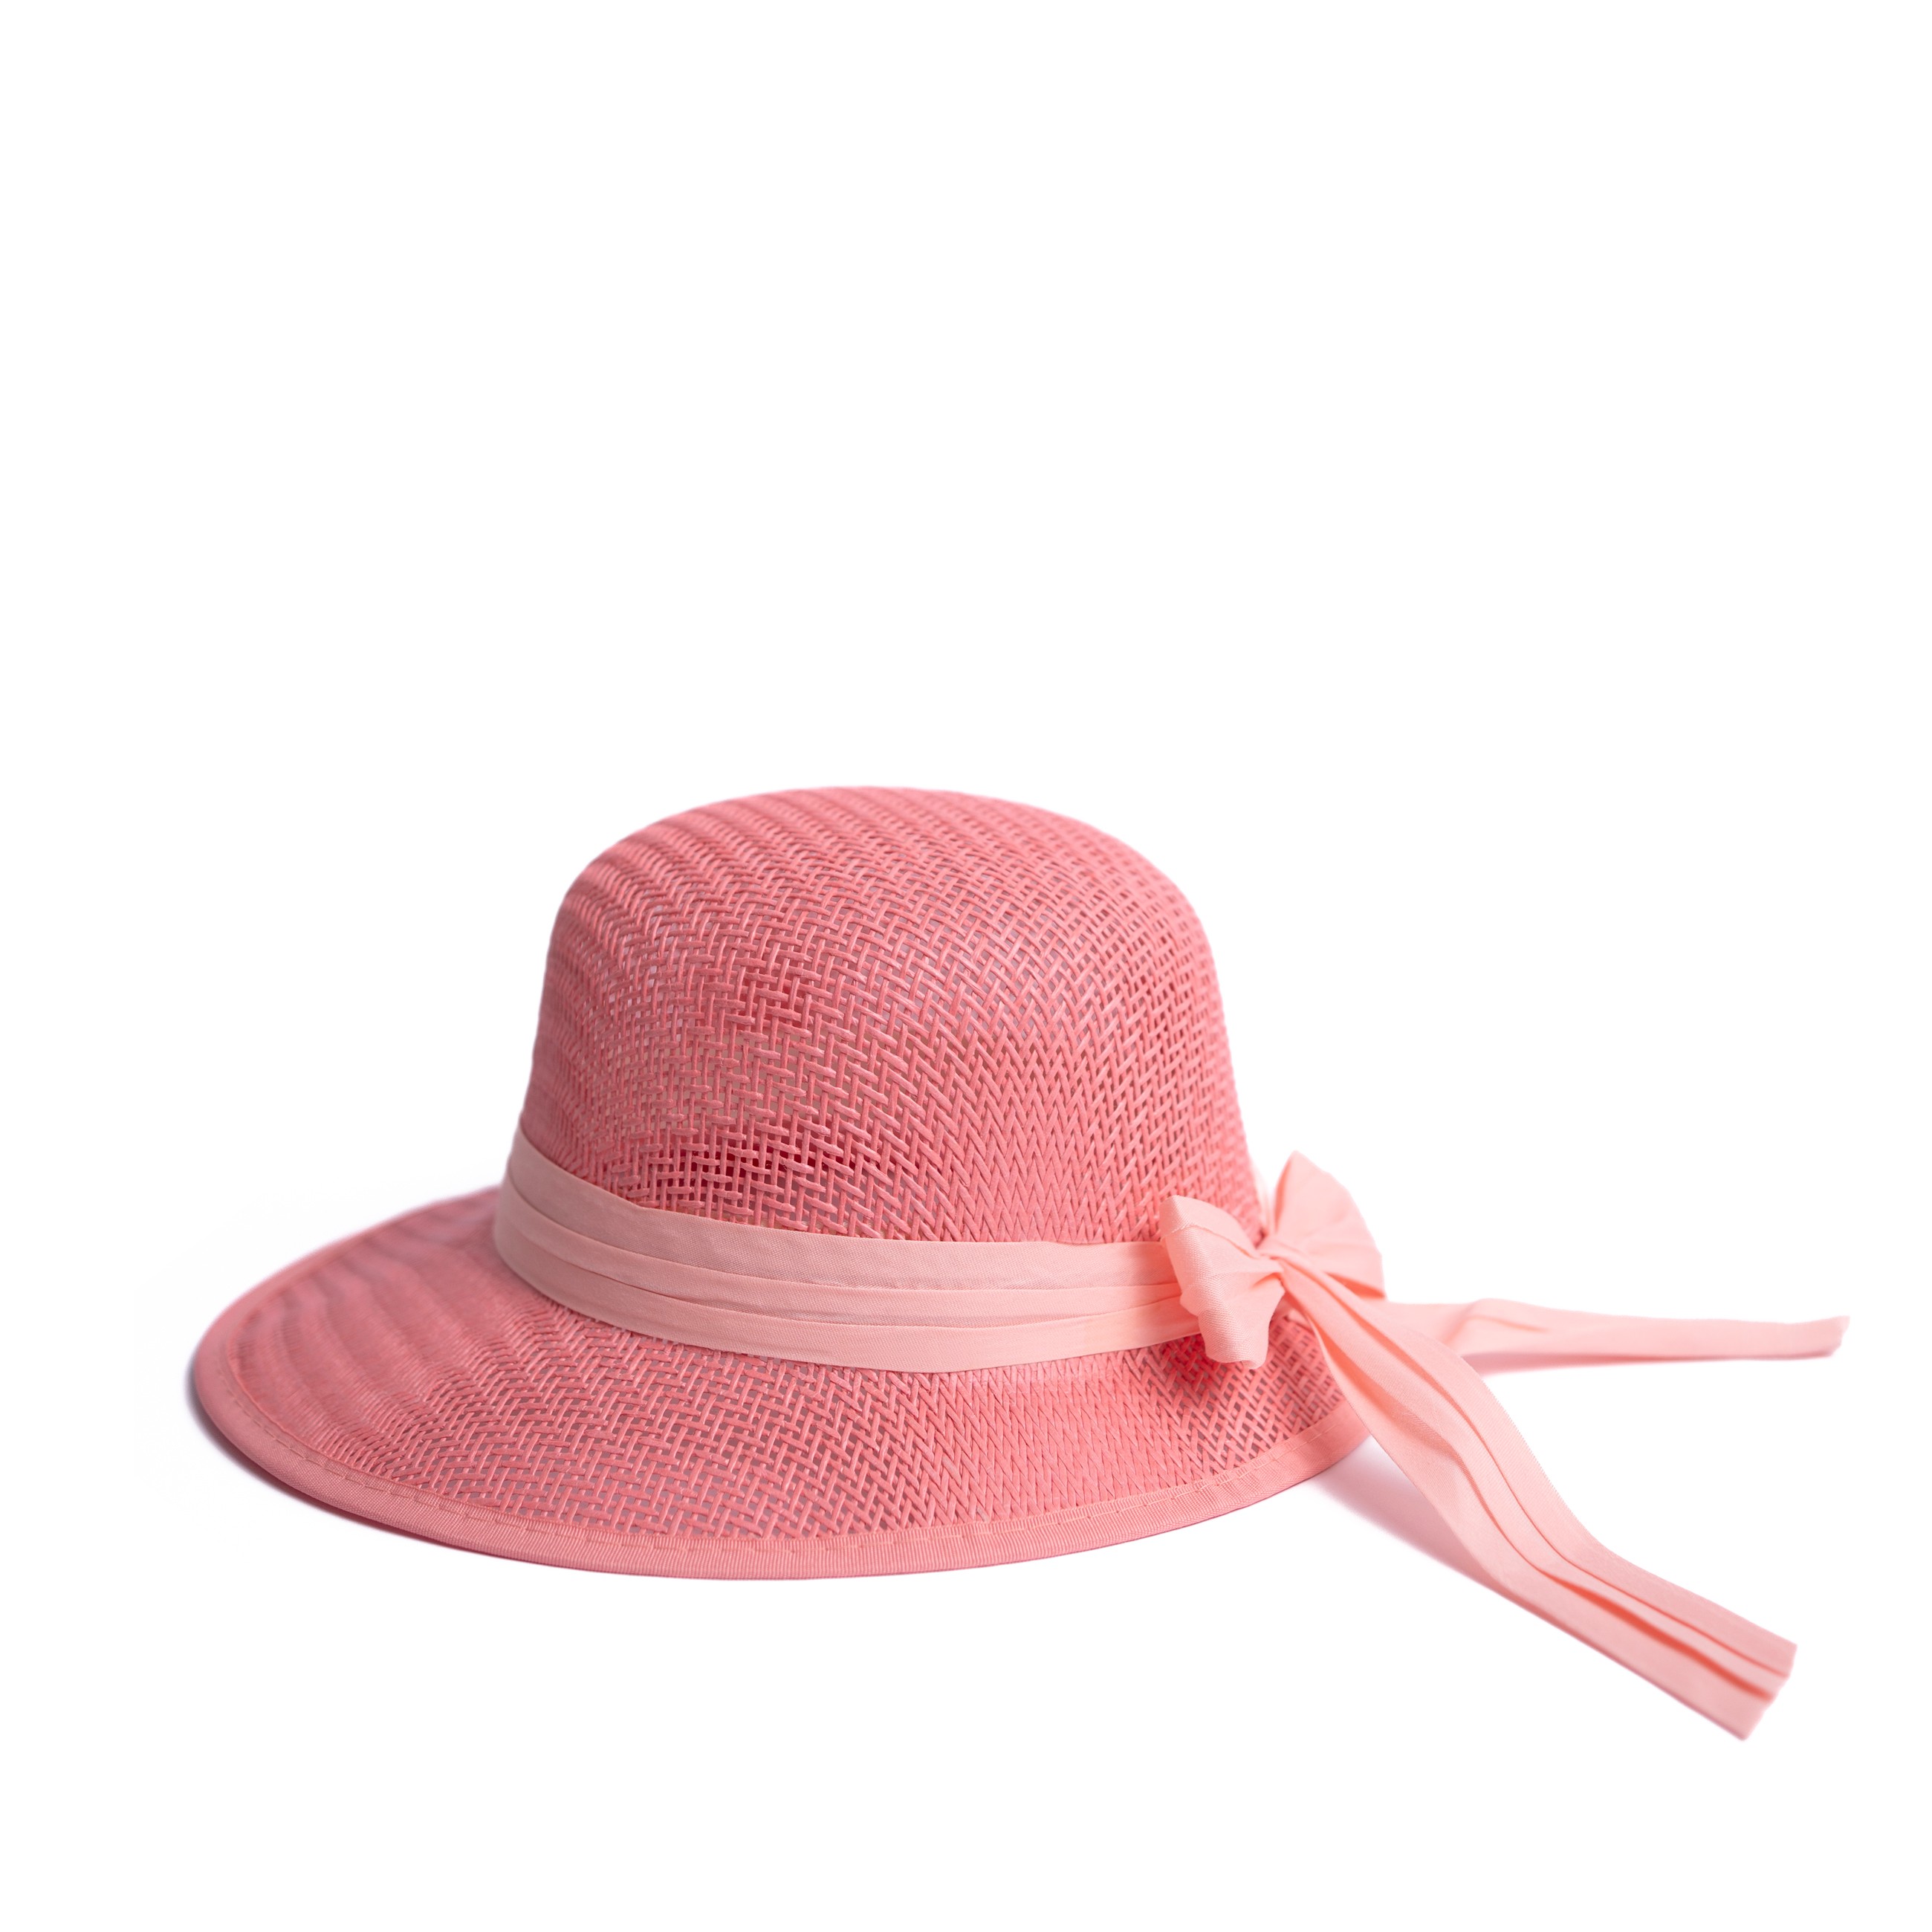 Dámský/dívčí slaměný klobouk cz24138 Barva: růžová